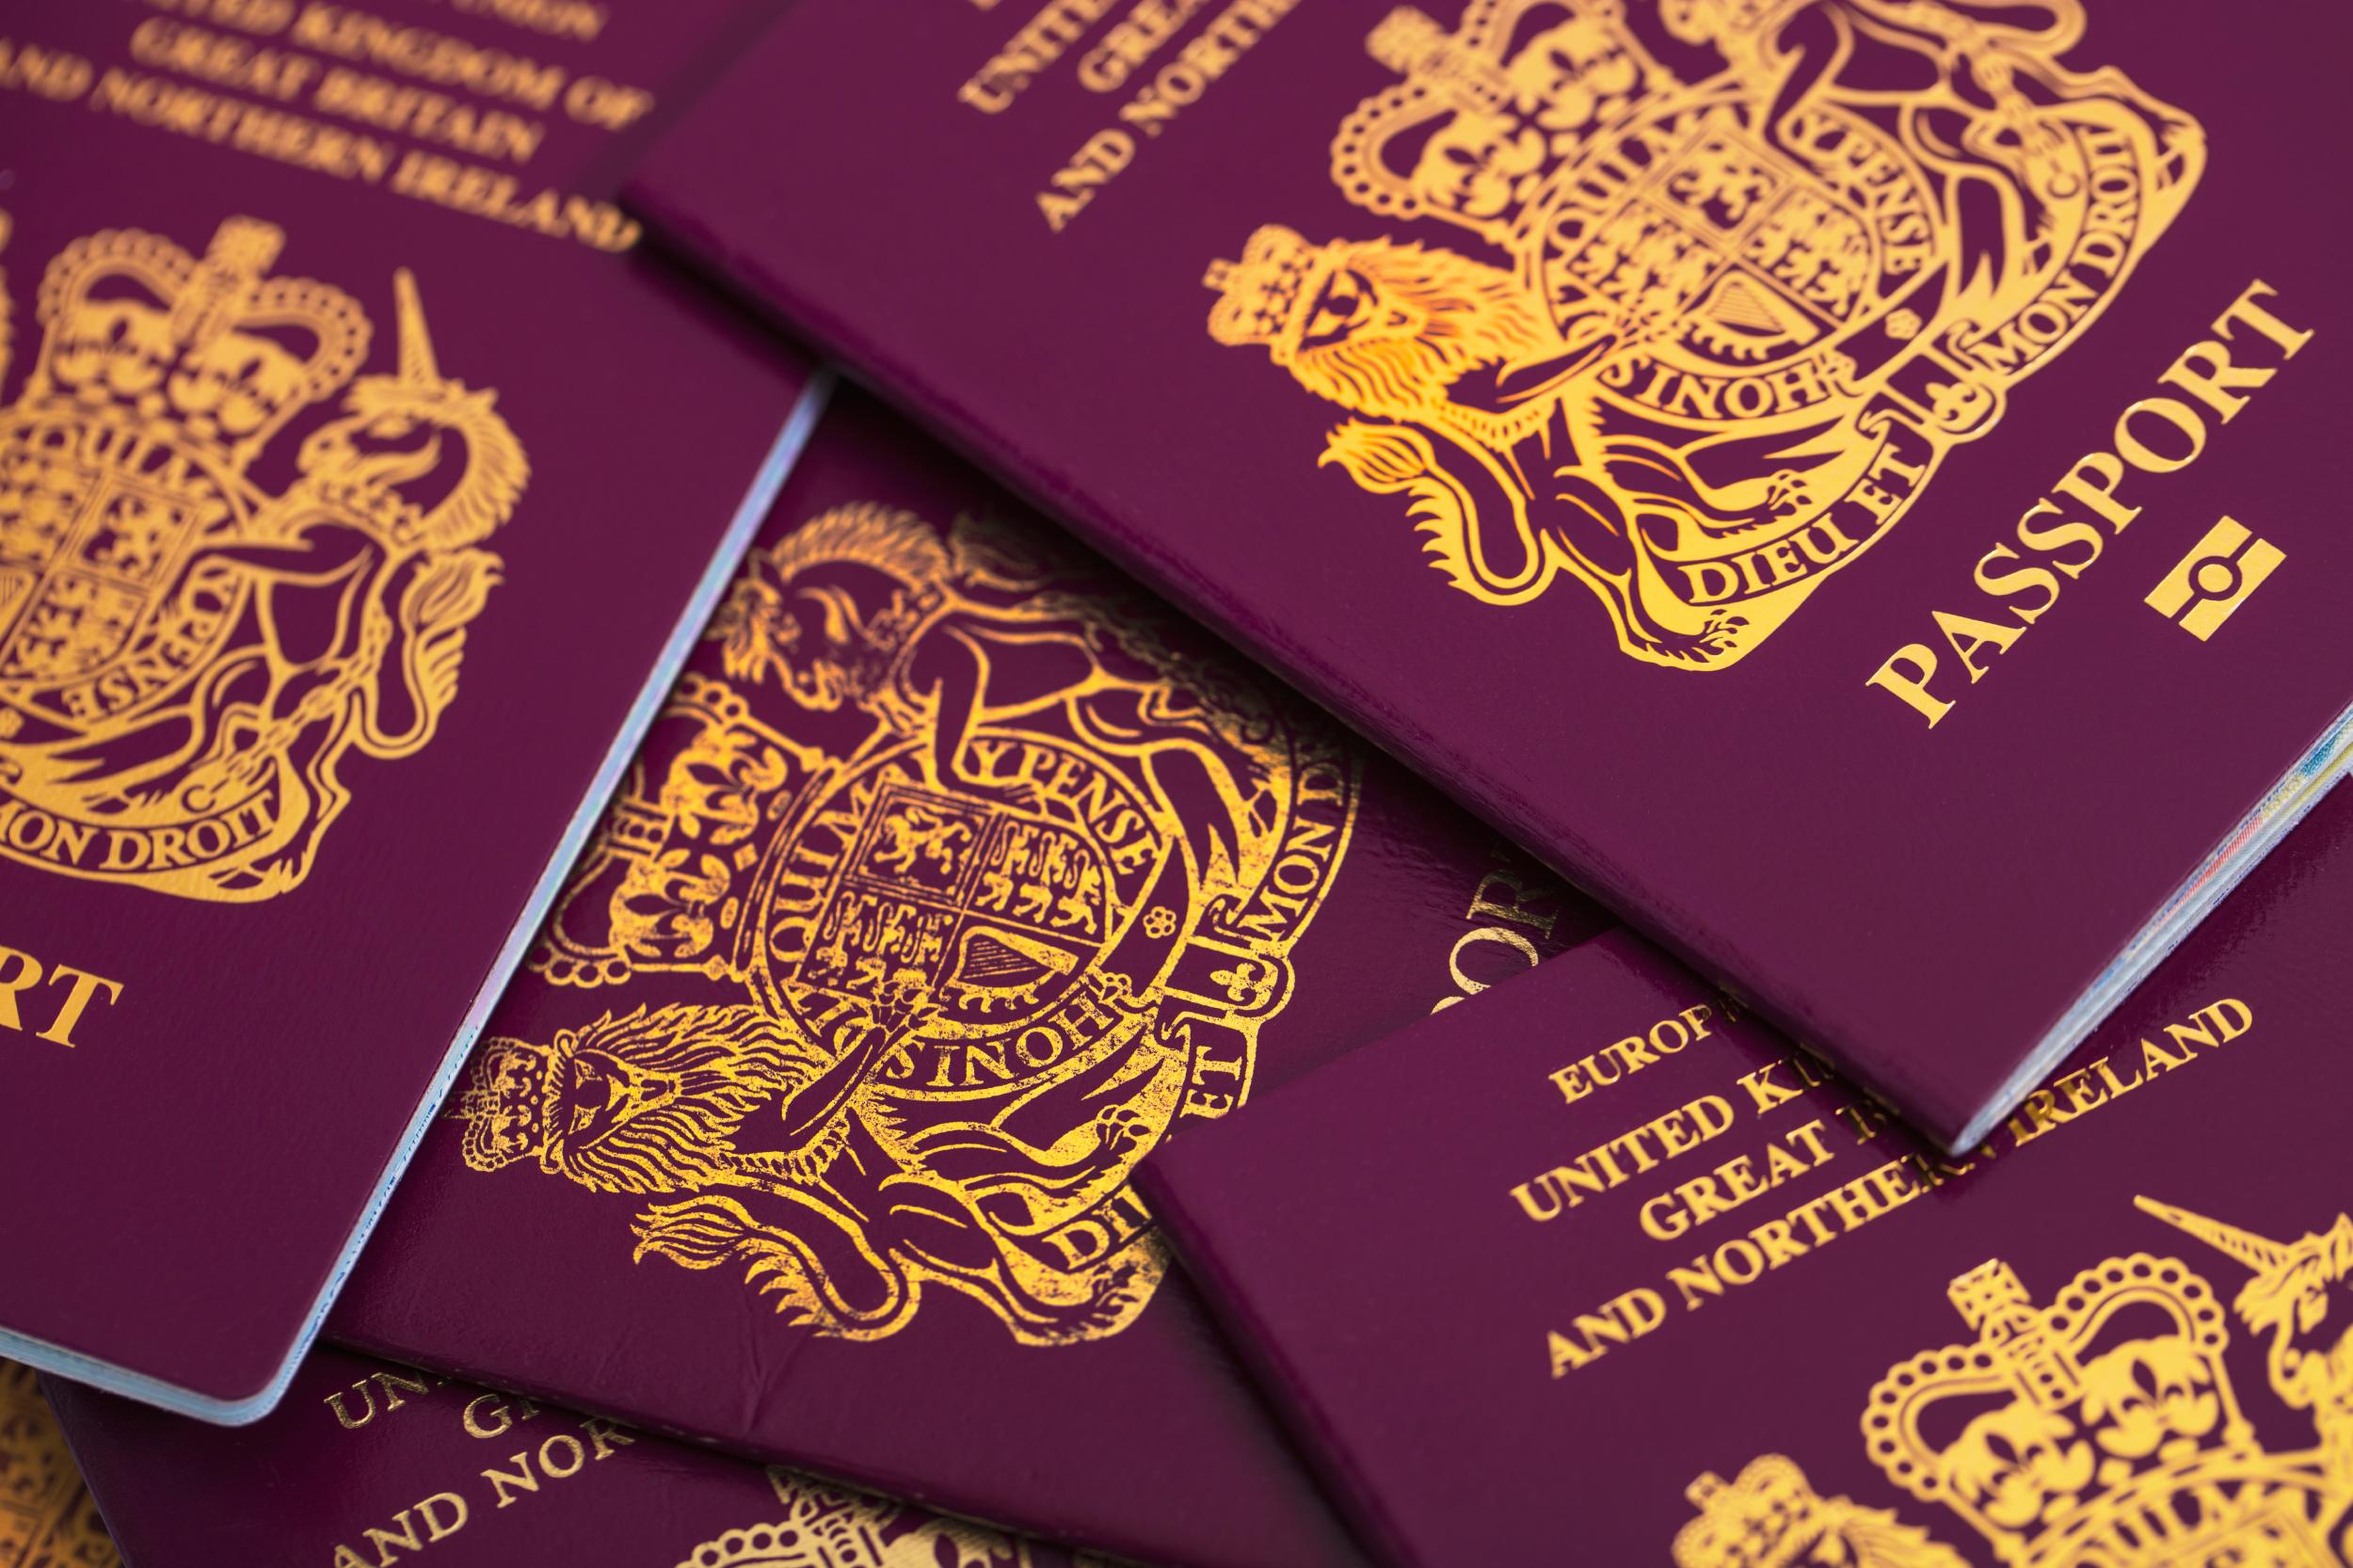 passport card travel to uk